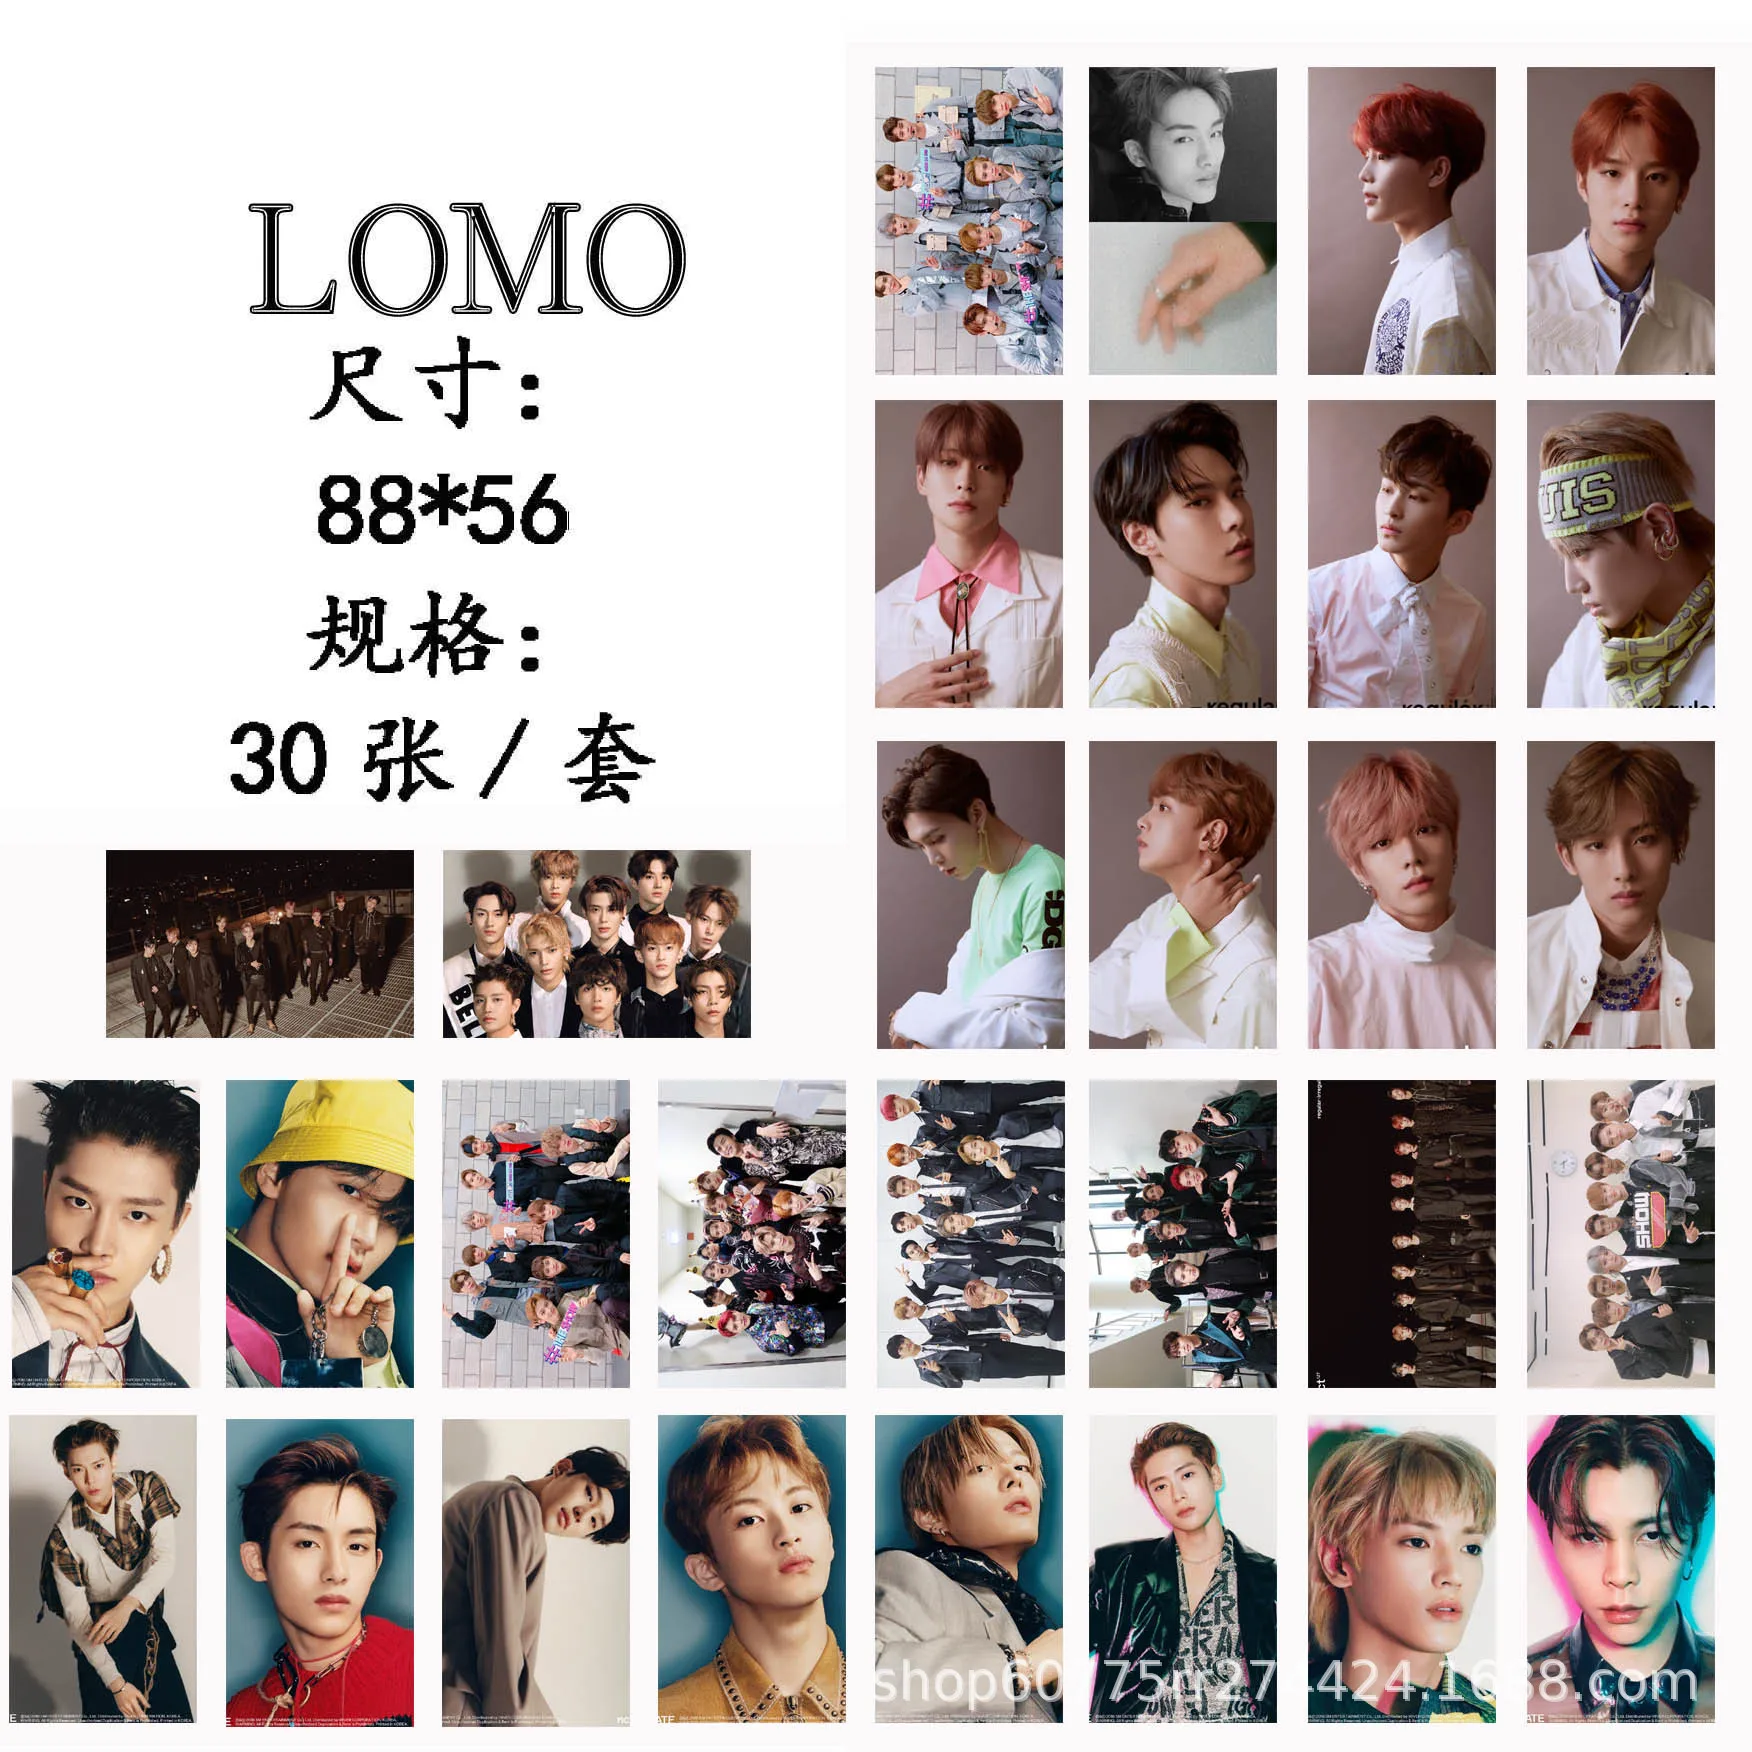 30 шт./компл. photonct 127 Фотокарта хорошего качества K-pop NCT DREAM HD Lomo карты NCT127 альбом регулярные Модные Новые поступления